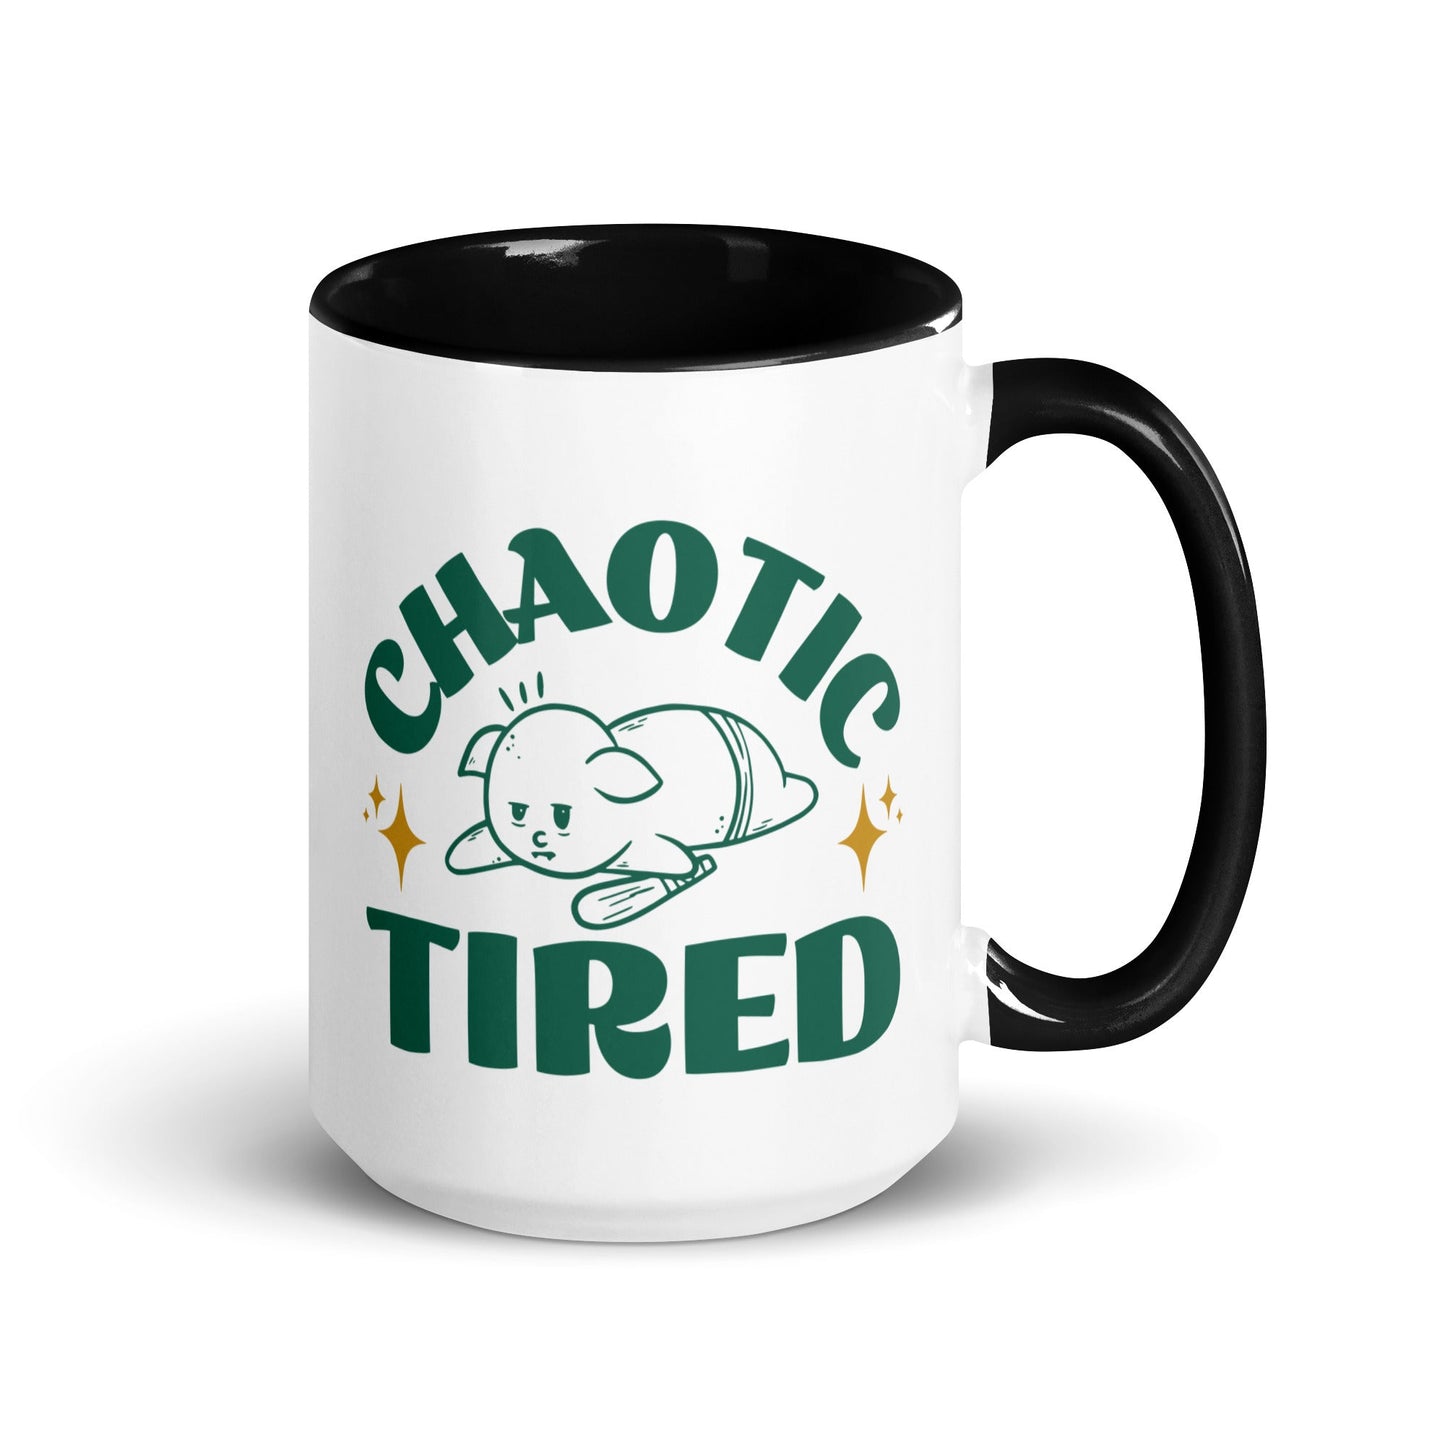 Chaotic Tired Mug - Funny Coffee Mug for Tired Goblins Mug Black / 15 oz